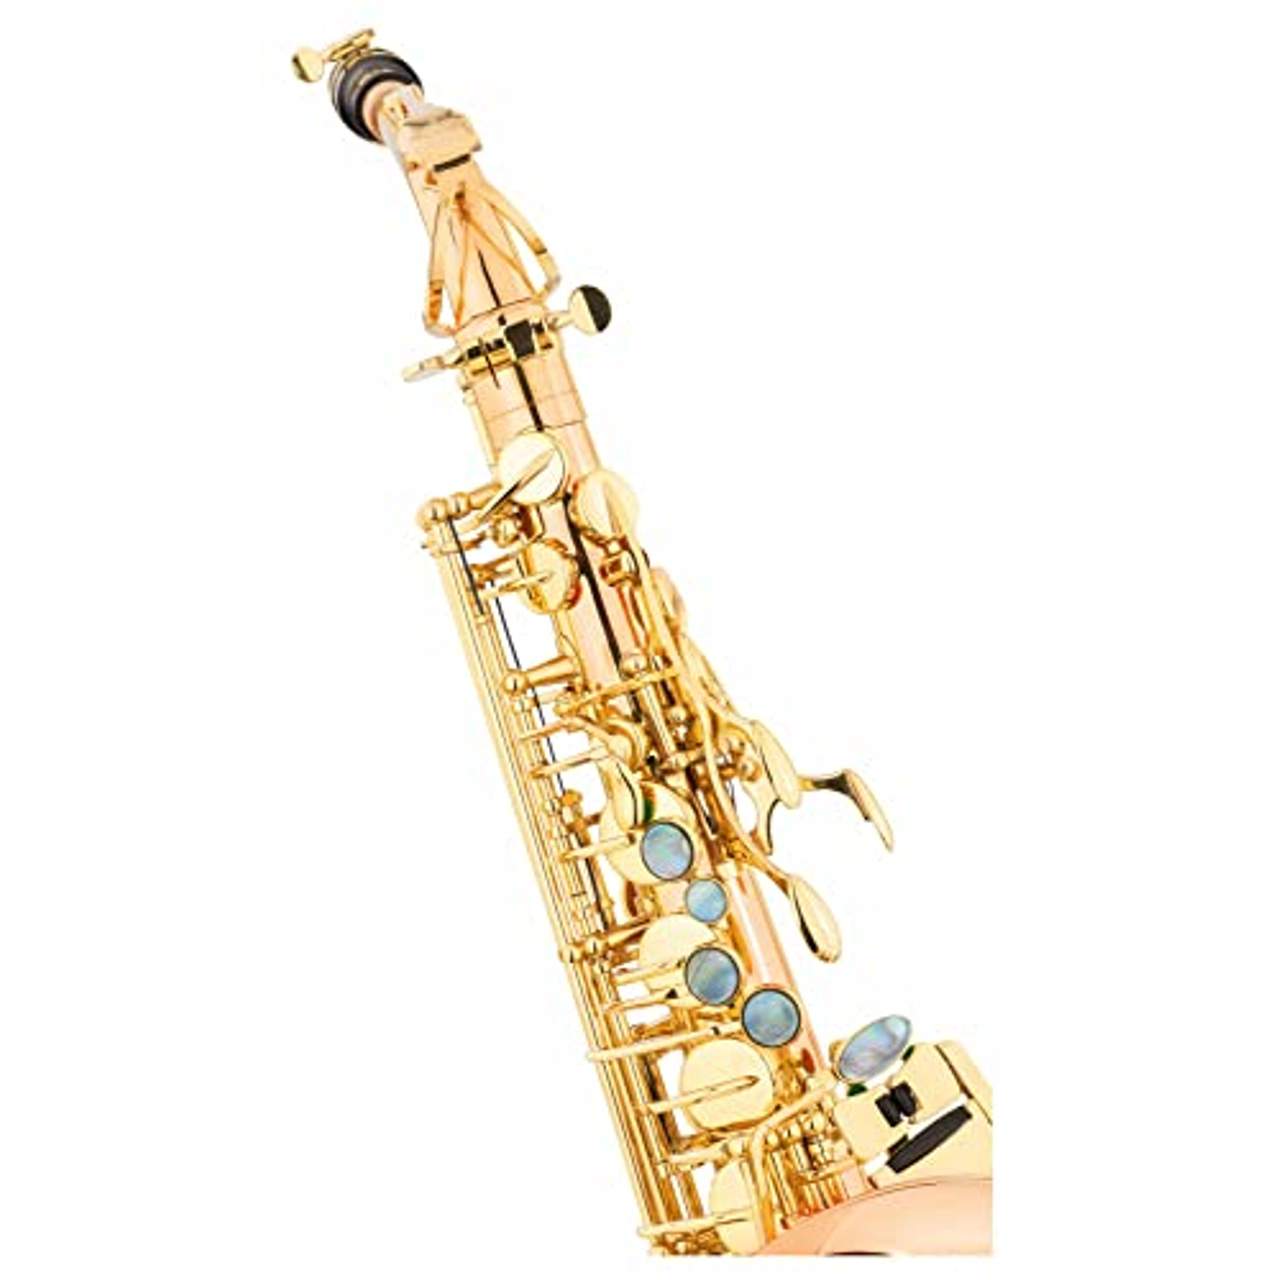 Lechgold LAS-20GL Alt-Saxophon aus lackiertem Goldmessing